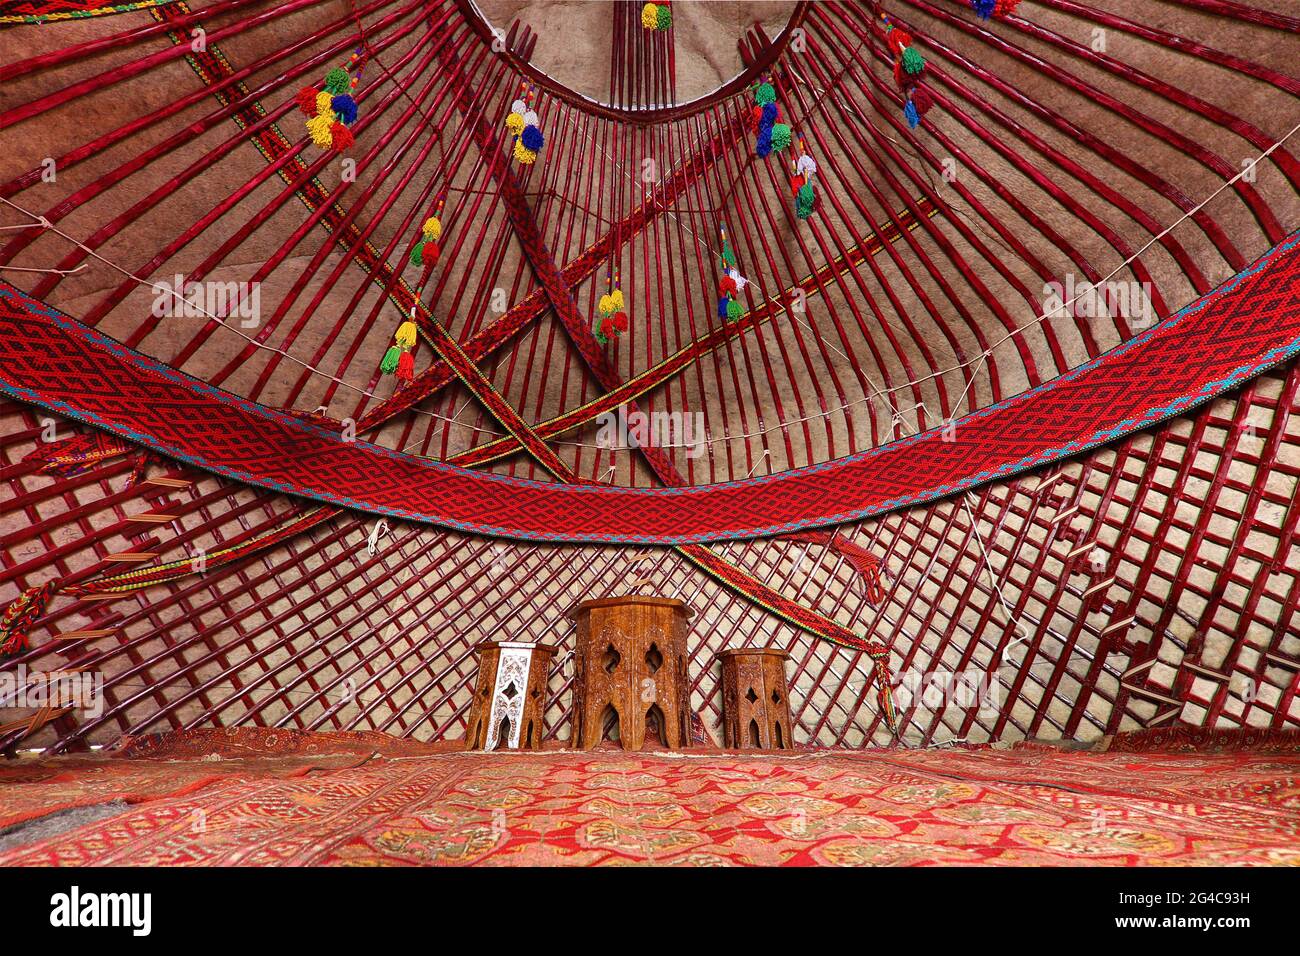 Intérieur d'une yourte nomade à Khiva, Ouzbékistan Banque D'Images